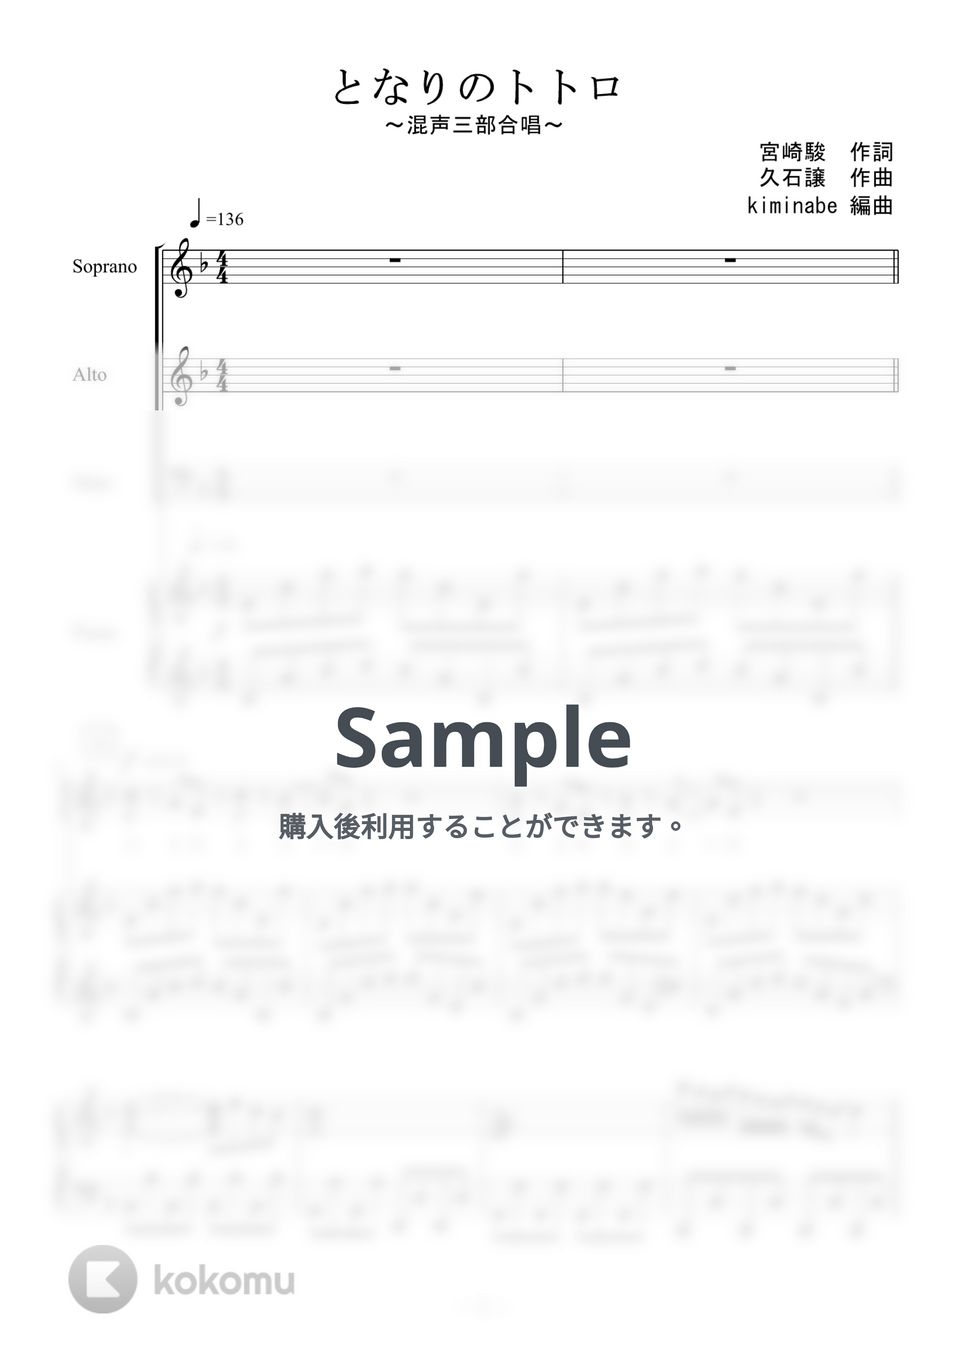 久石譲 - となりのトトロ (混声三部合唱) by kiminabe